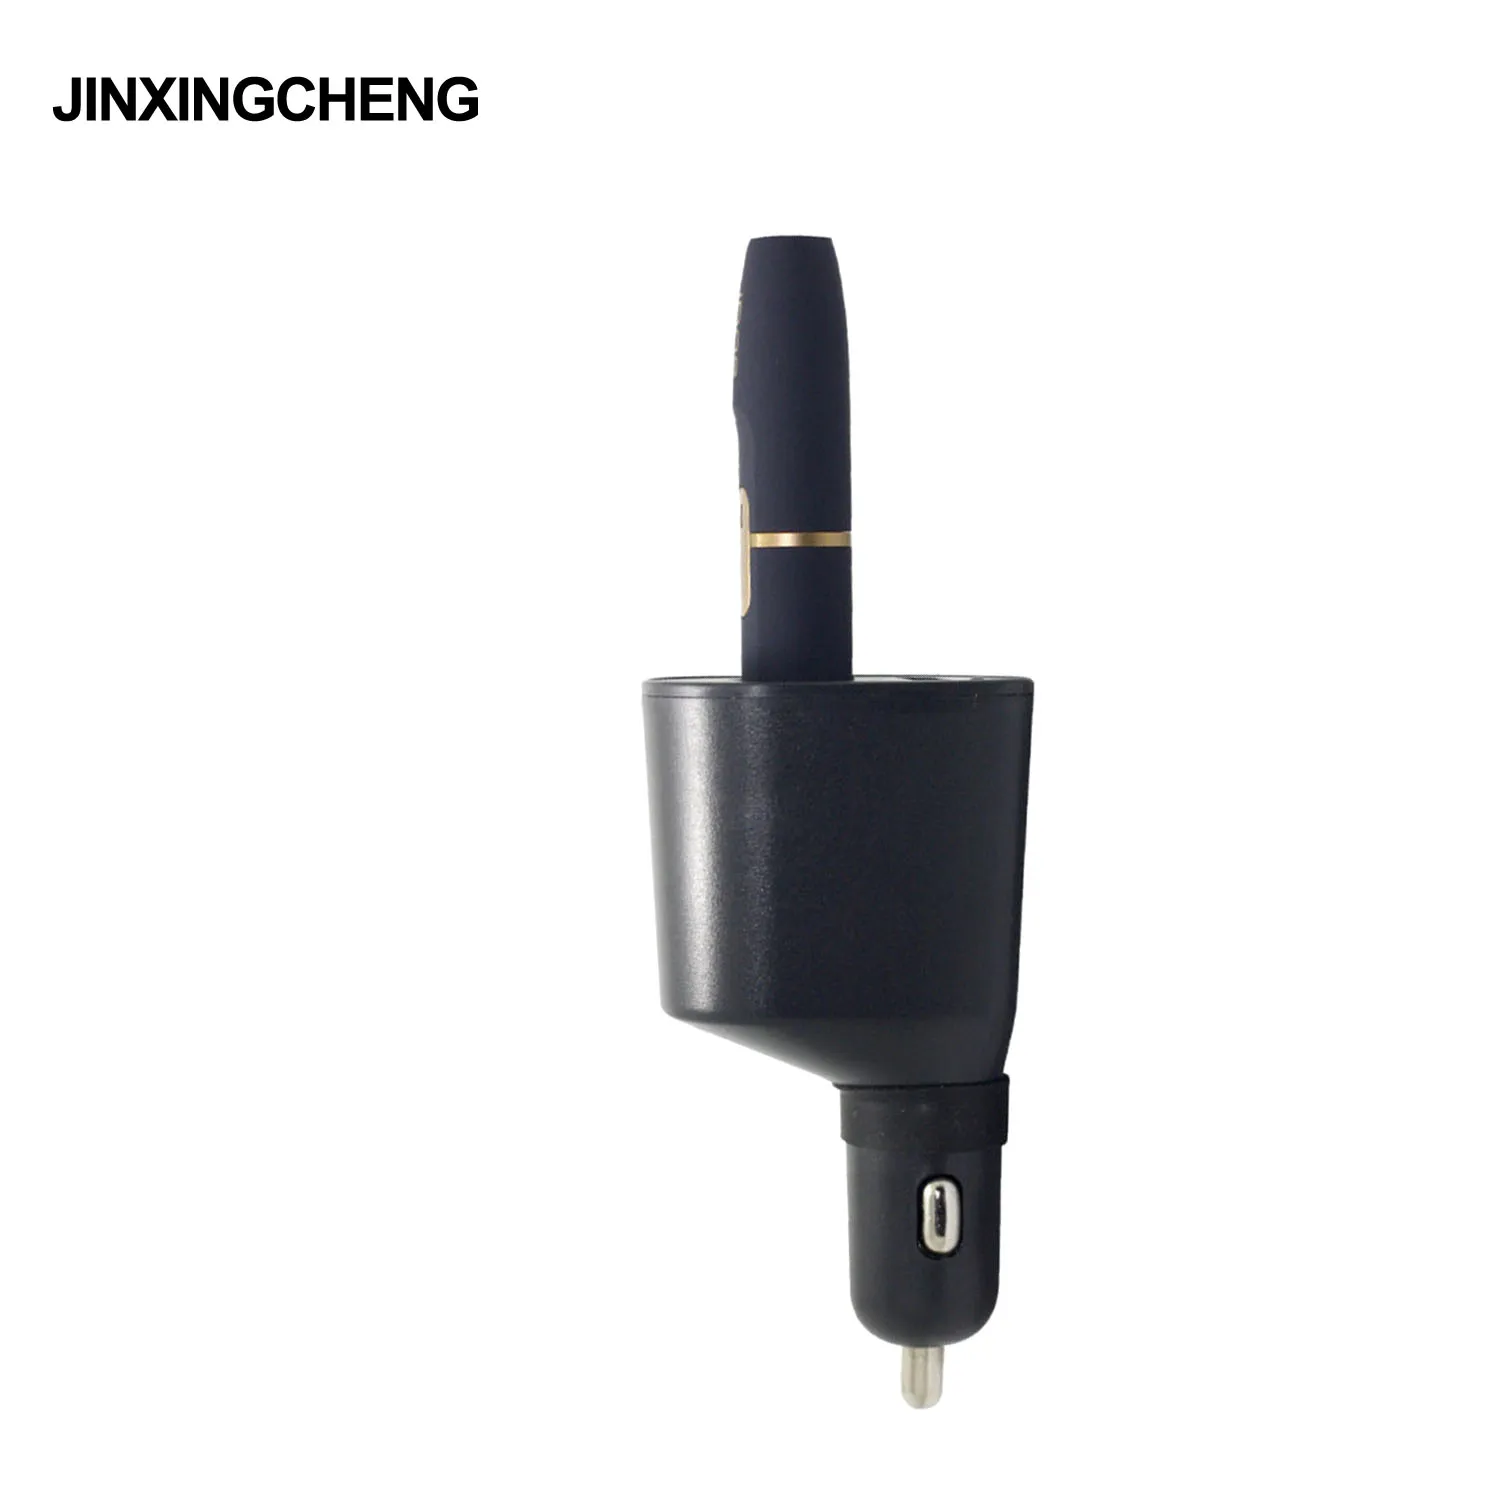 JINXINGCHENG 2 в 1 дизайн металлический материал автомобильное зарядное устройство для iqos нагревательный стержень зарядное устройство Быстрая зарядка для iqos подставка зарядная док-станция